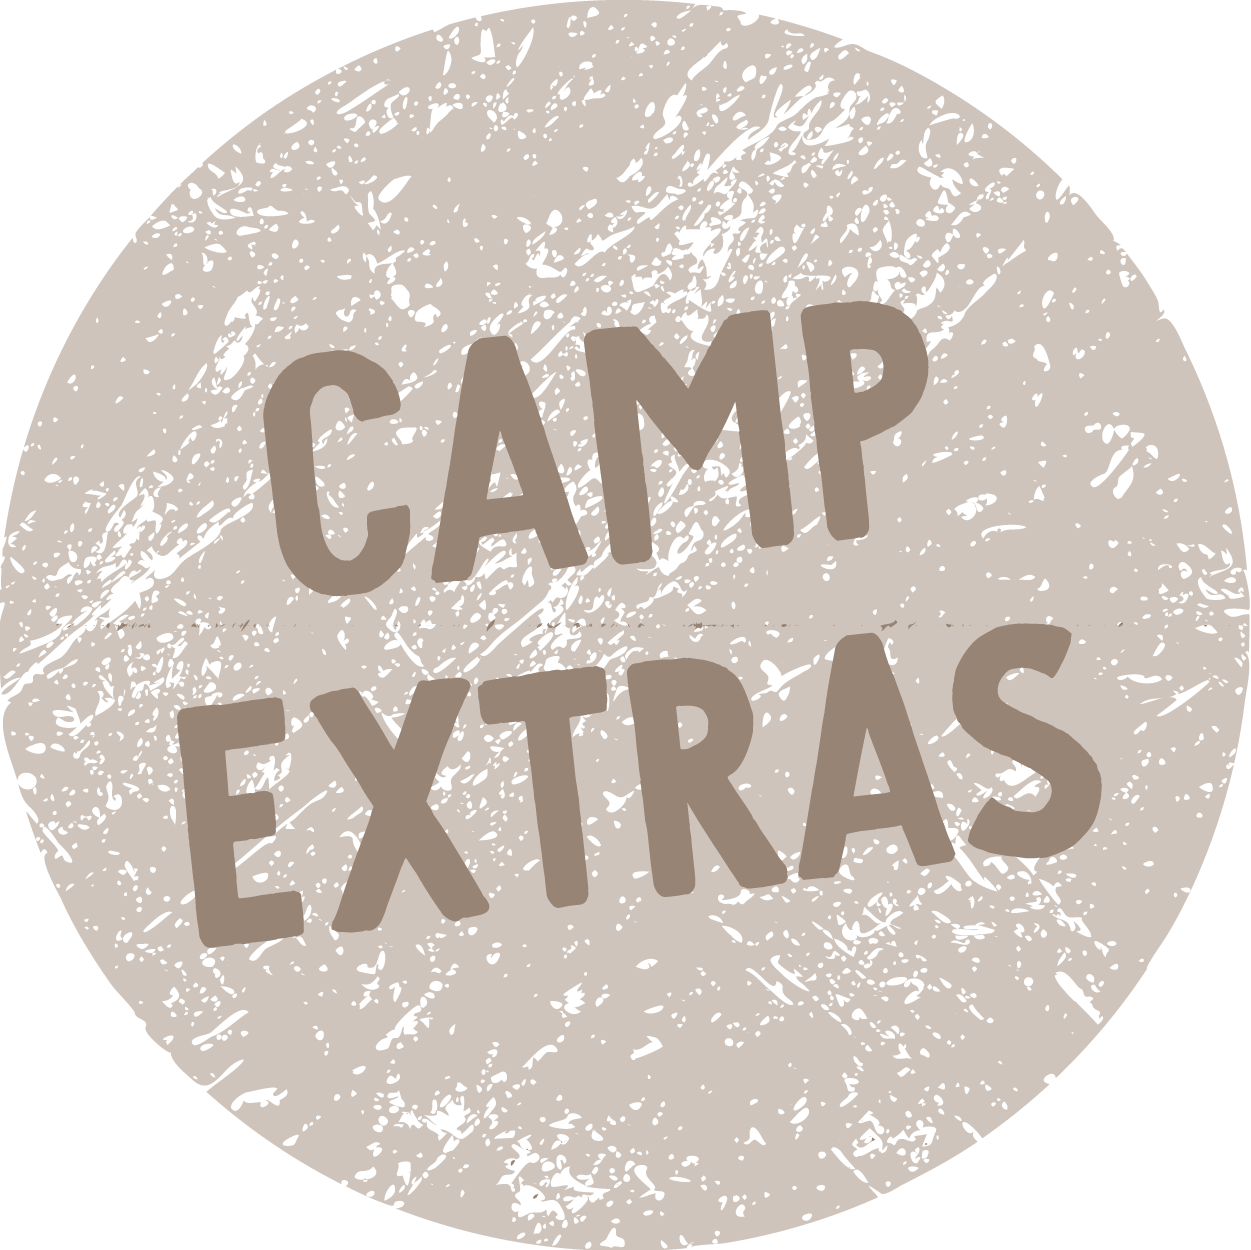 Camp extras